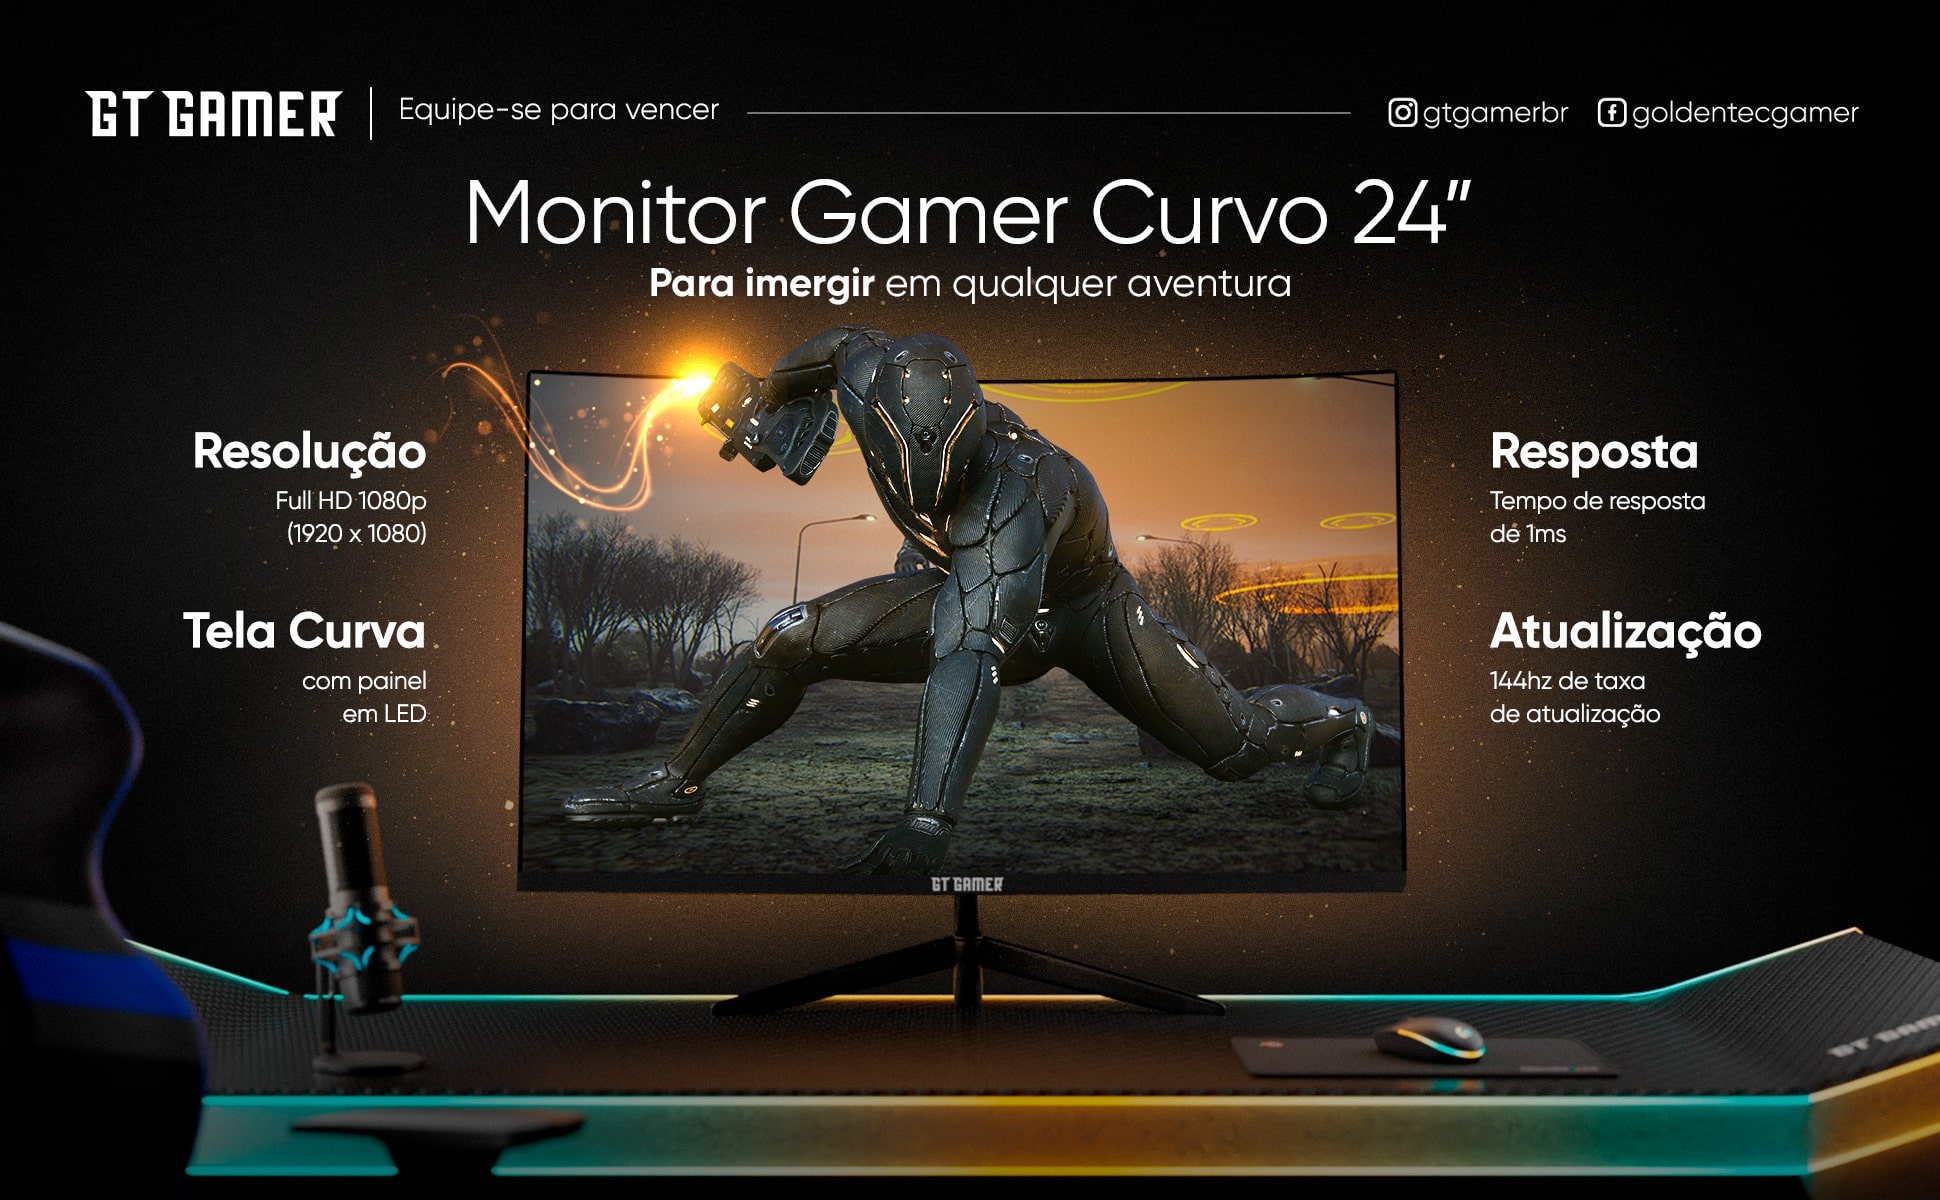 Monitor Gaming 24 FHD 144Hz Curvo